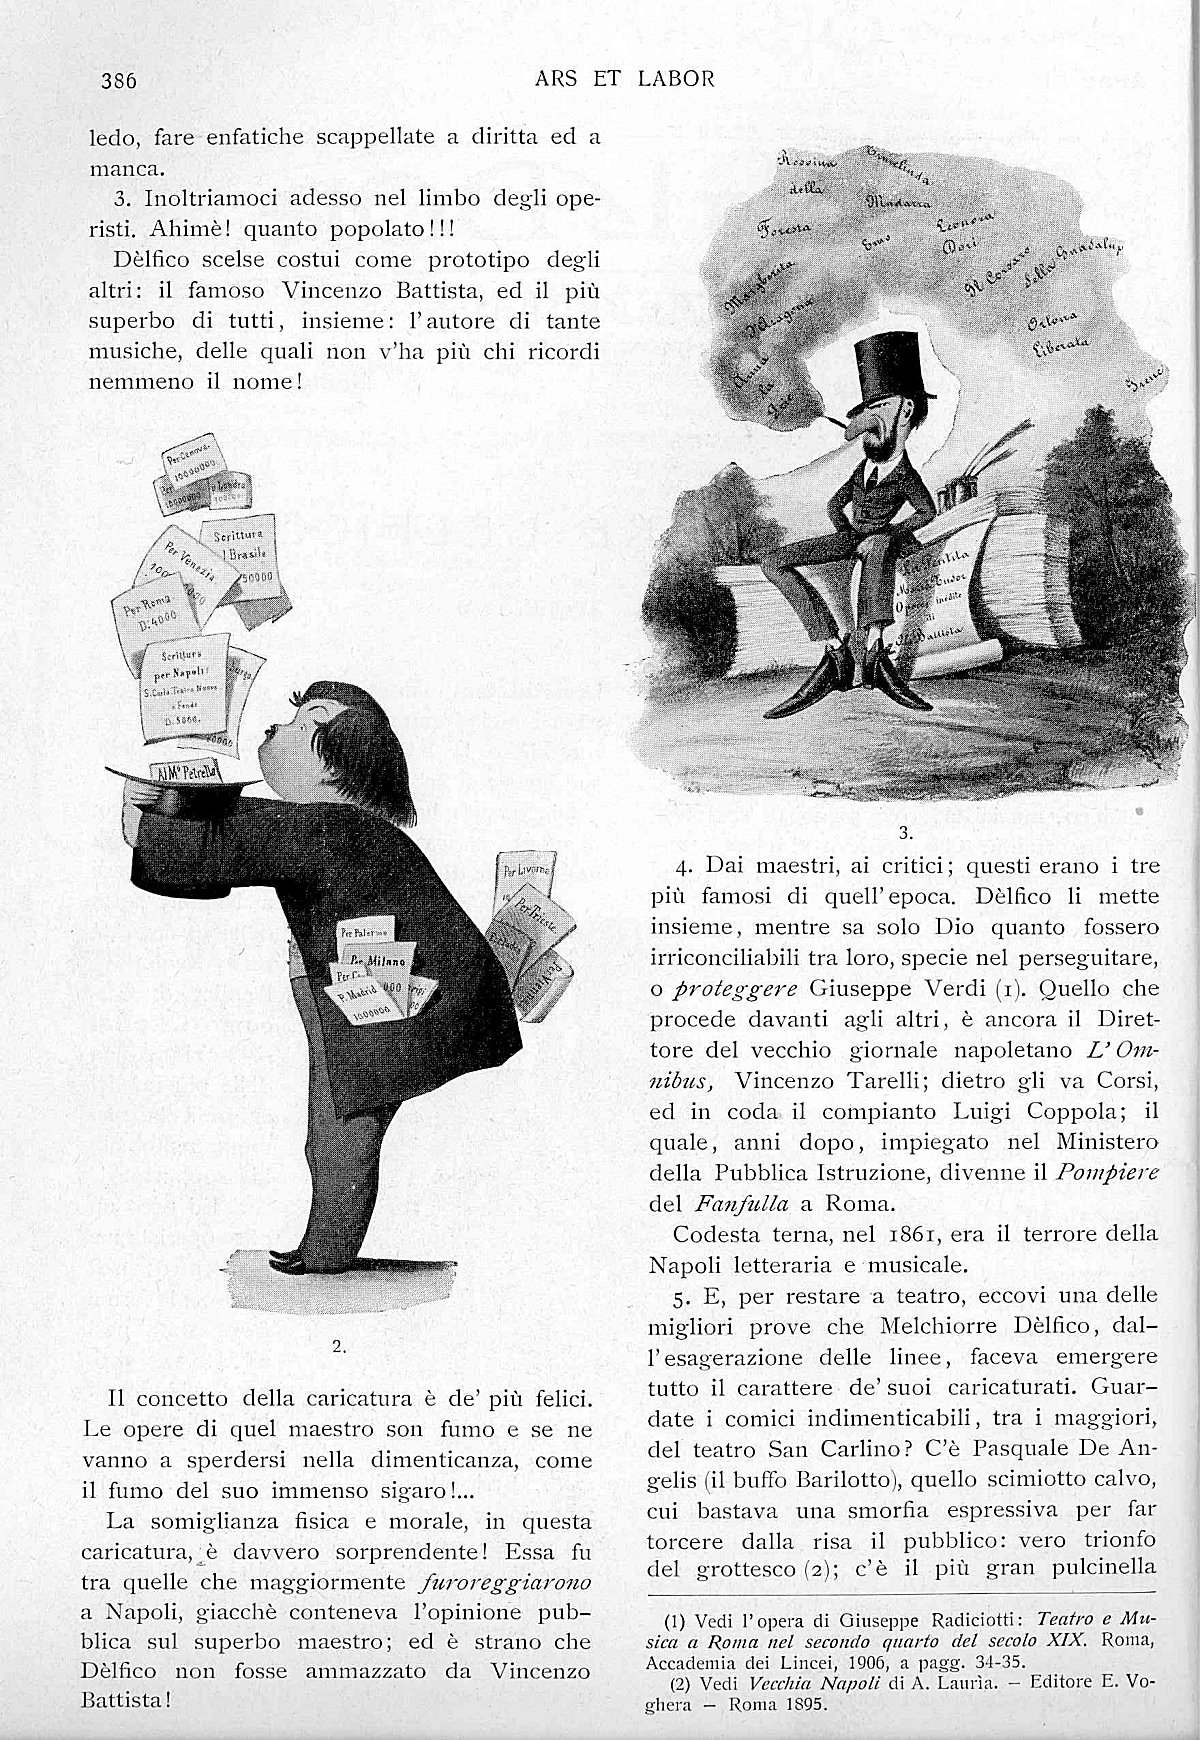 "Ars et Labor", Maggio 1906, anno 61°, n. 5, pag. 386